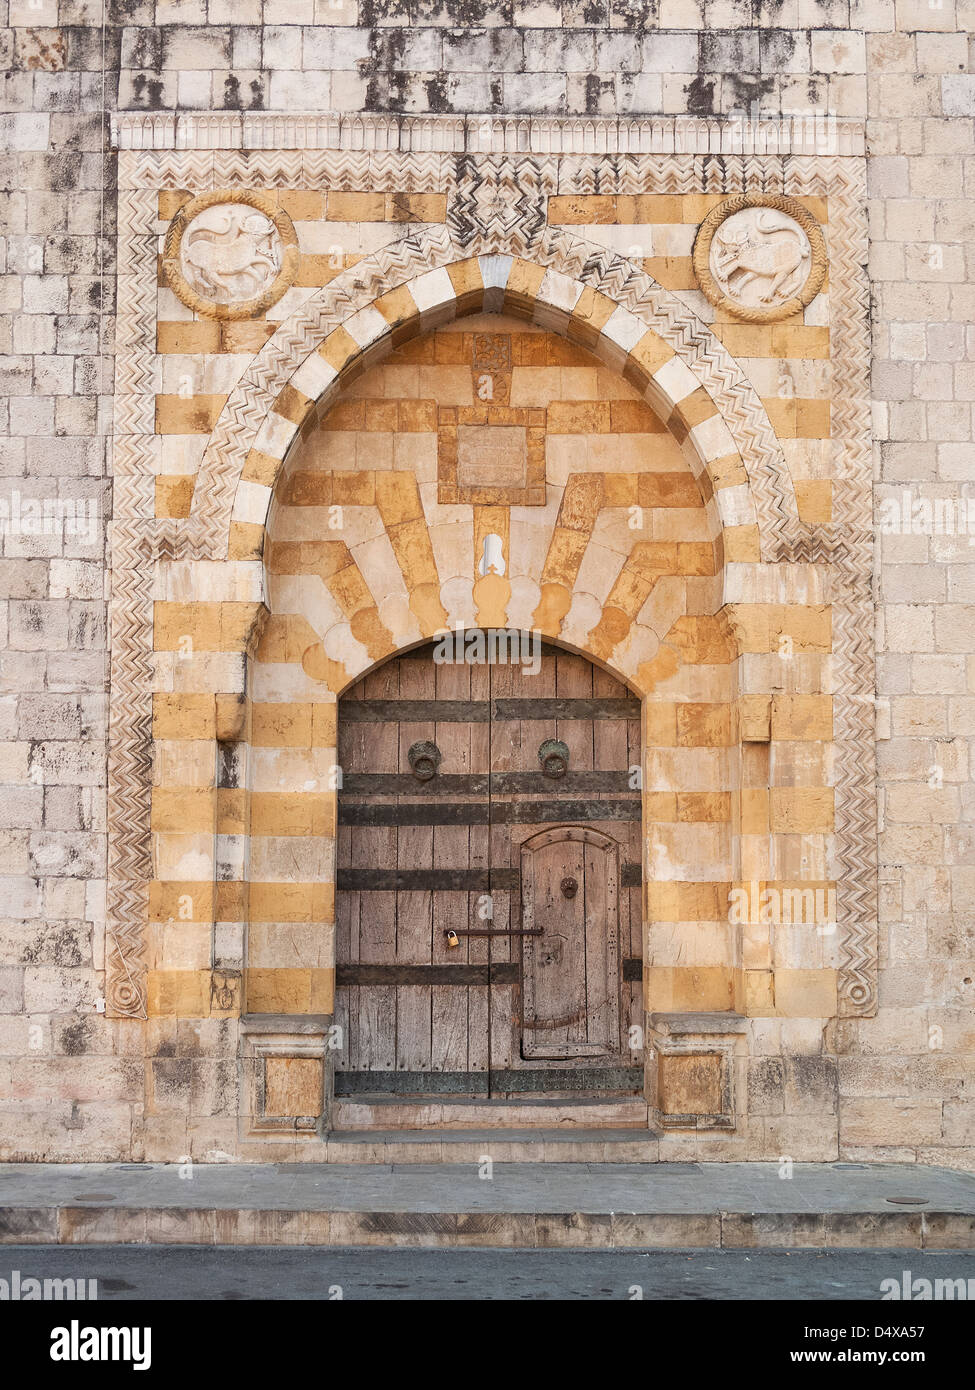 Porte de l'église chrétienne près de Beyrouth au Liban Banque D'Images